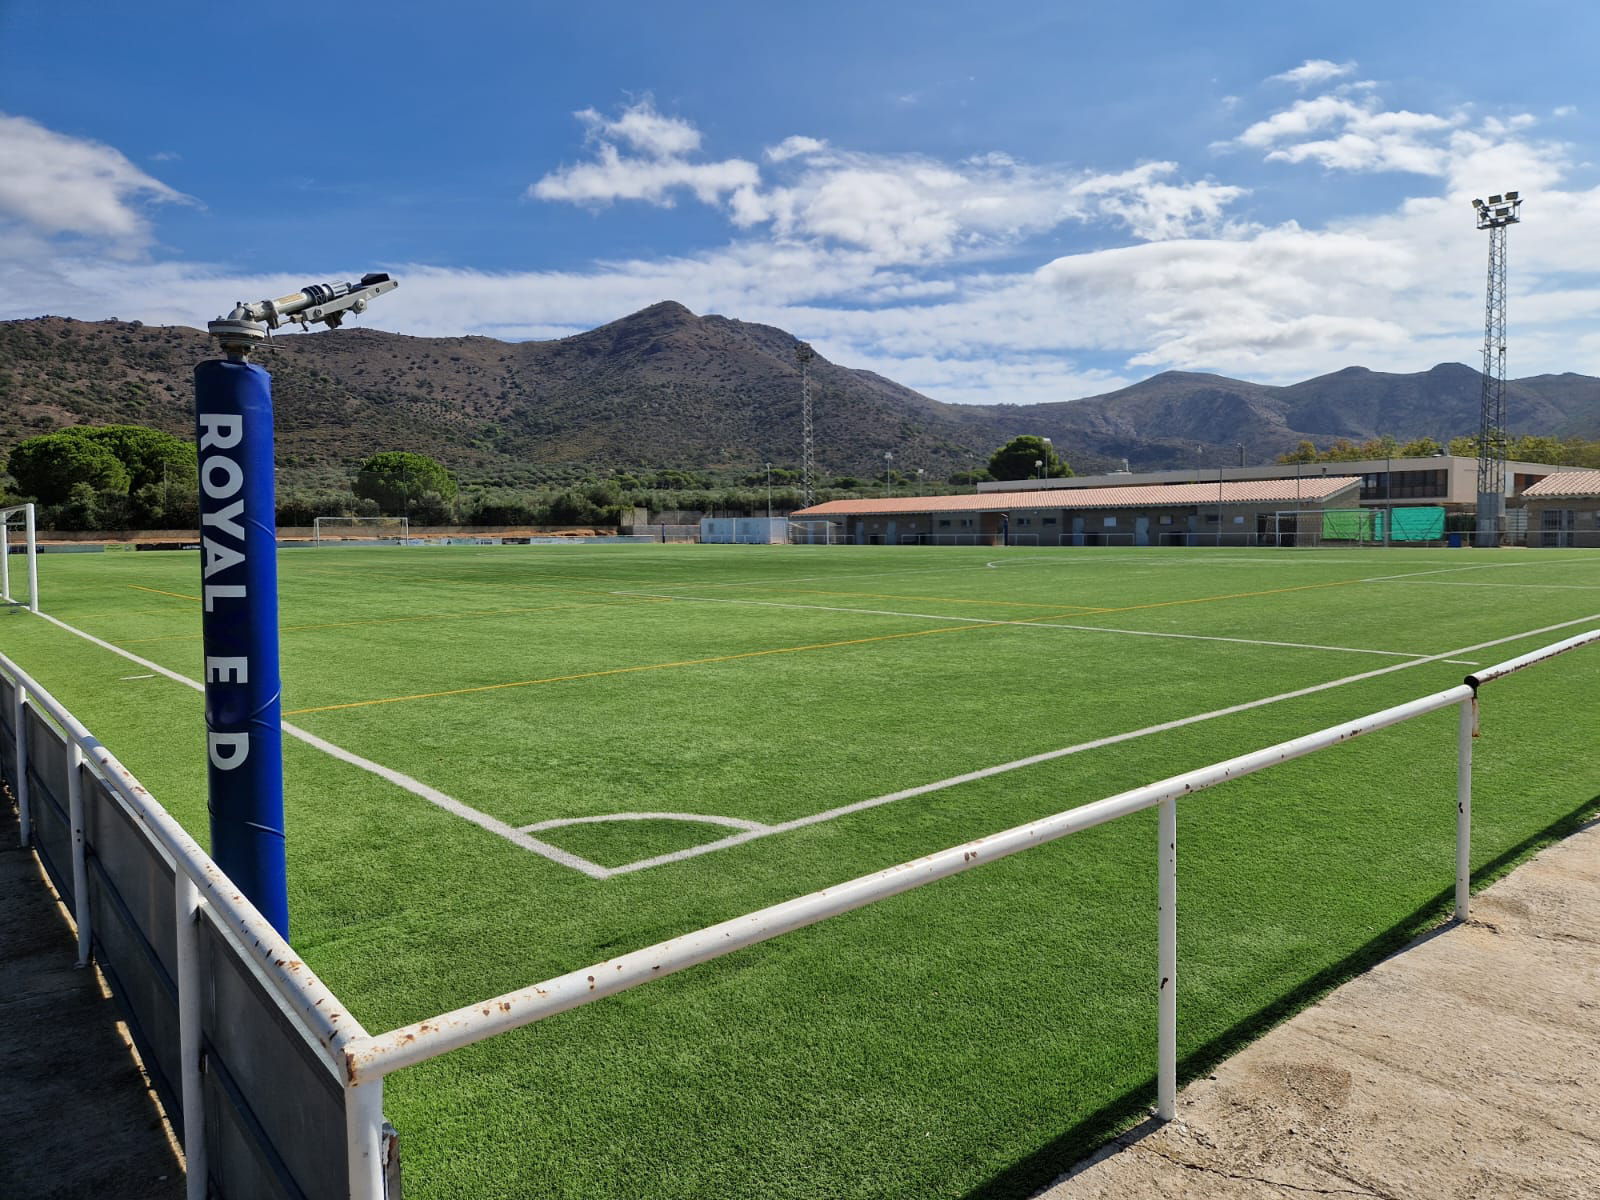 El camp de futbol de La Vinyassa renovarà la instal·lació elèctrica per ser més eficient energèticament